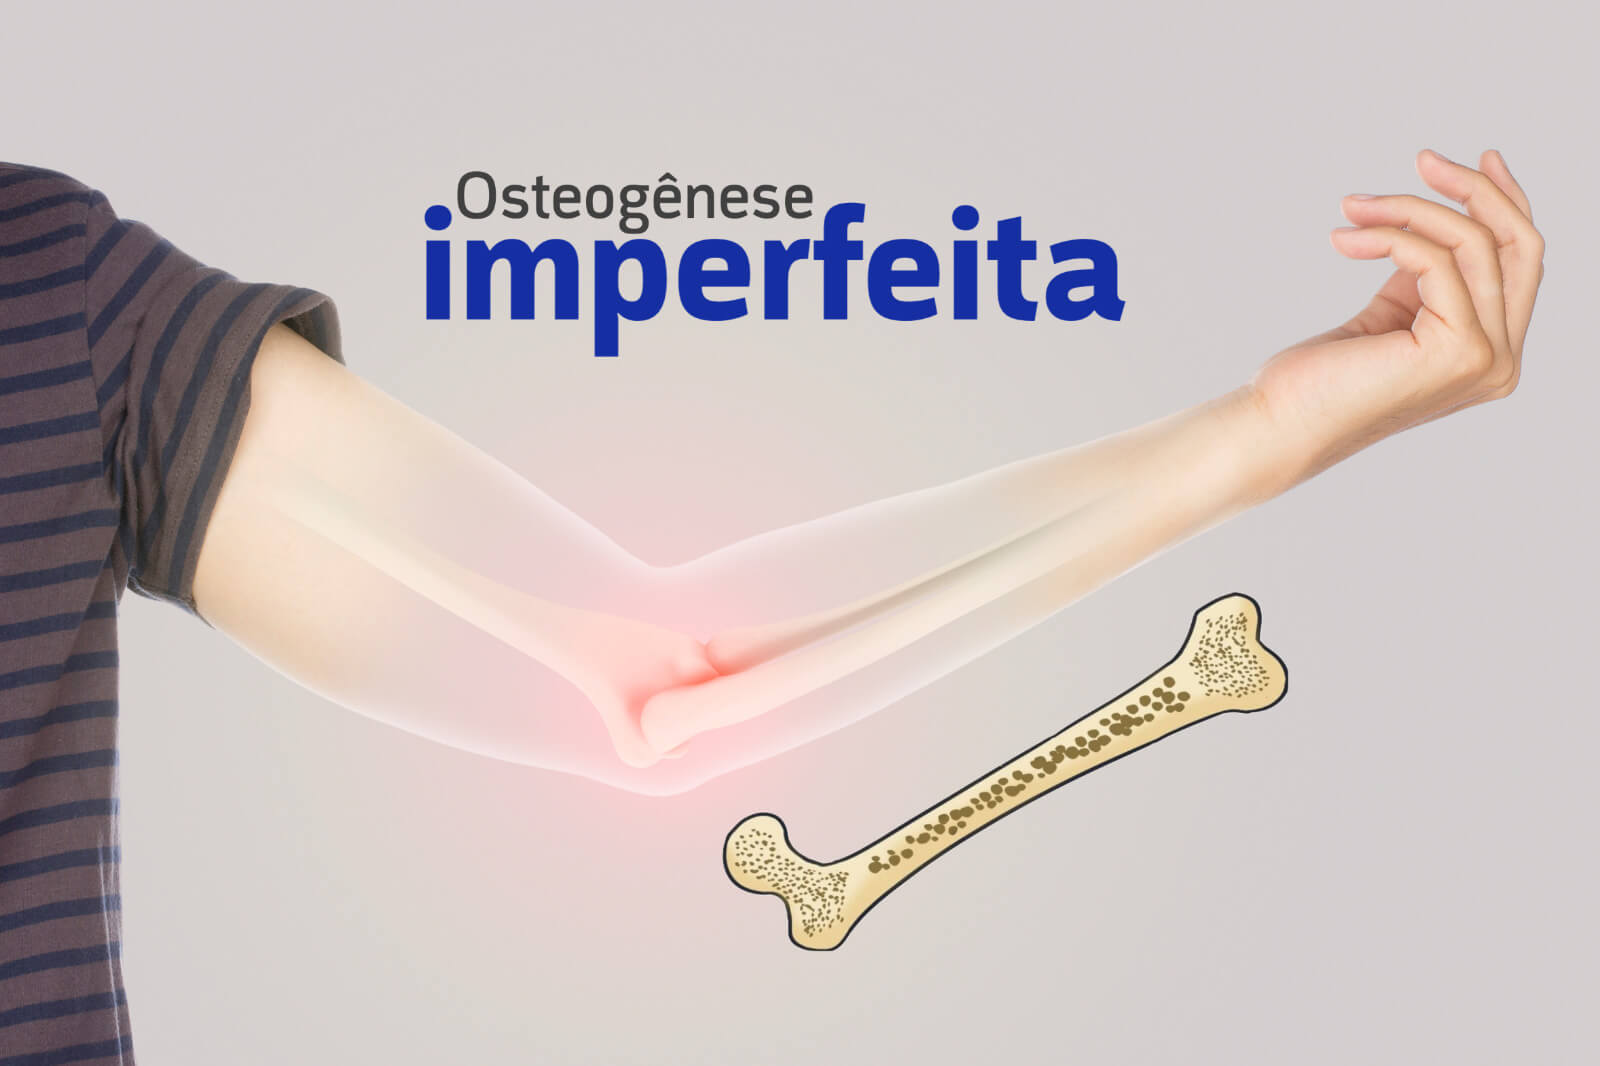 Osteogênese imperfeita